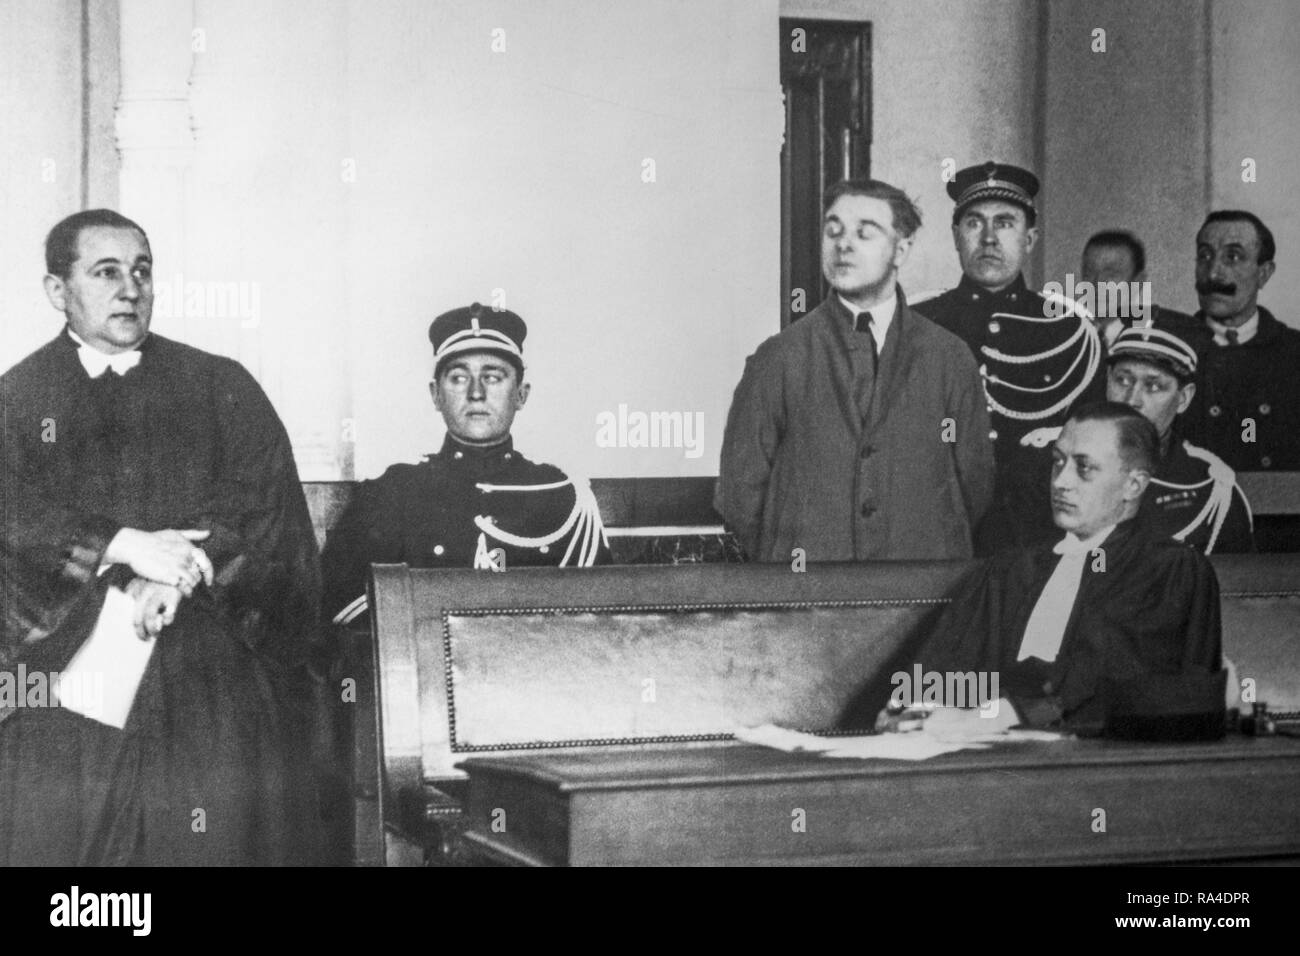 Milieu du 20ème siècle photo d'archives d'avocats et criminel escorté par des gendarmes / policiers dans des témoins à la cour belge de droit, Belgique Banque D'Images